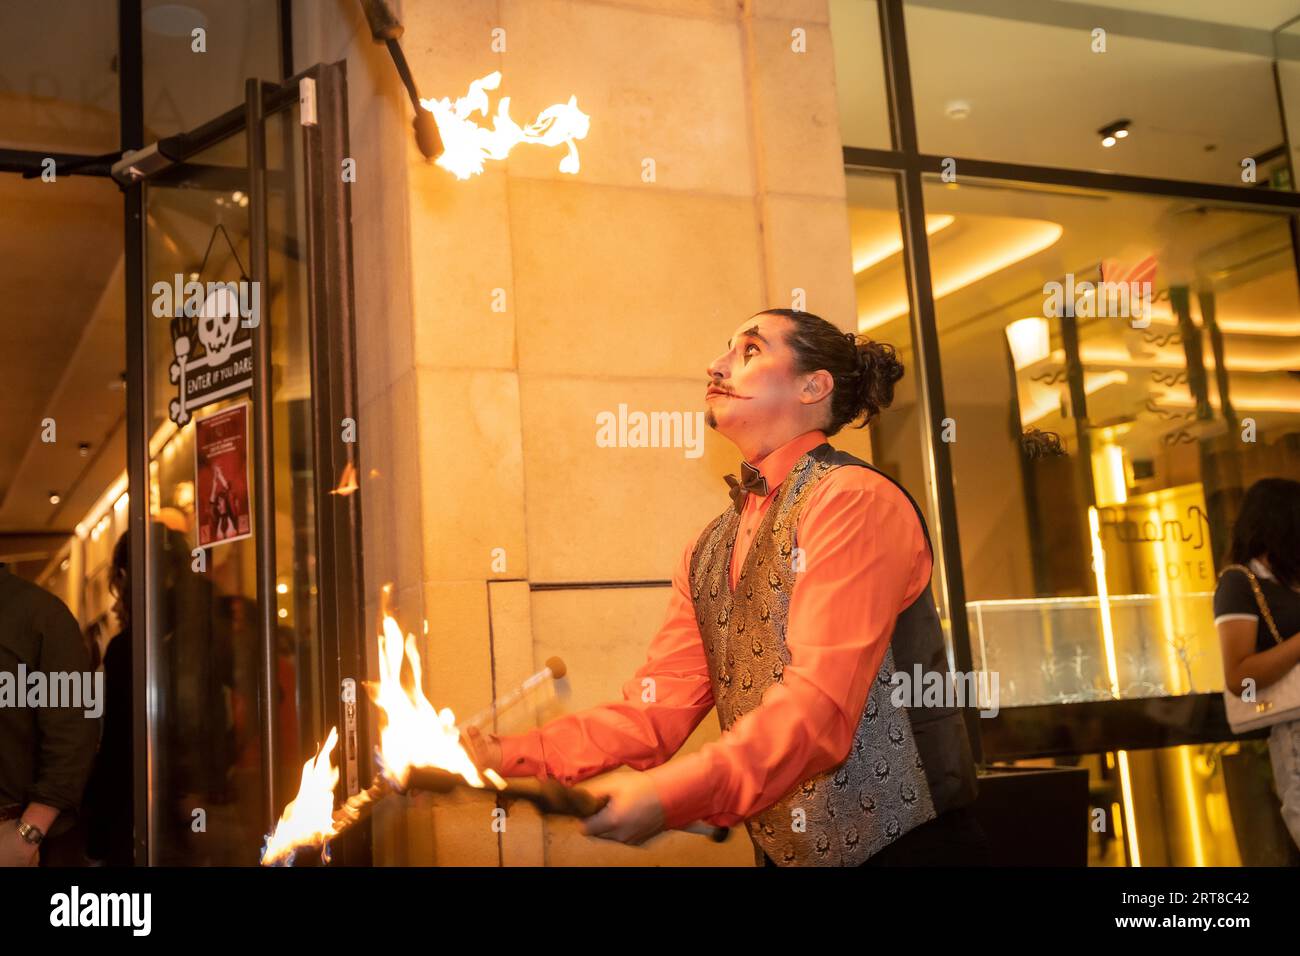 Jongleur à une fête d'halloween jonglant des bâtons avec le feu, à l'entrée de la discothèque Banque D'Images